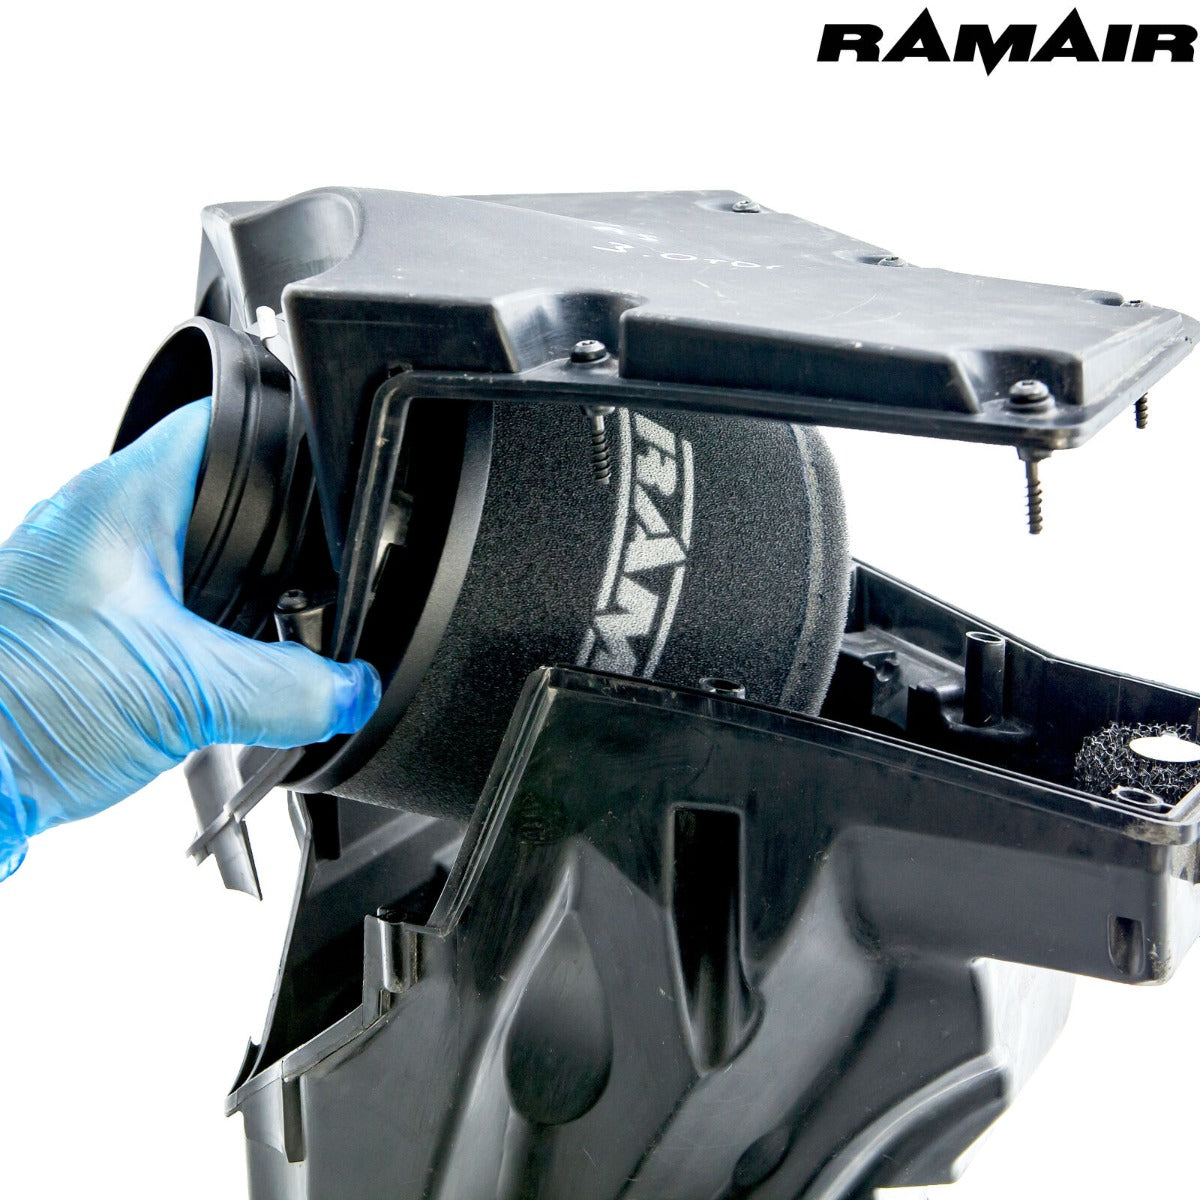 RAMAIR Air Panel Filter for Audi S4 (B8) 3.0 TFSI | A4 3.2 FSI